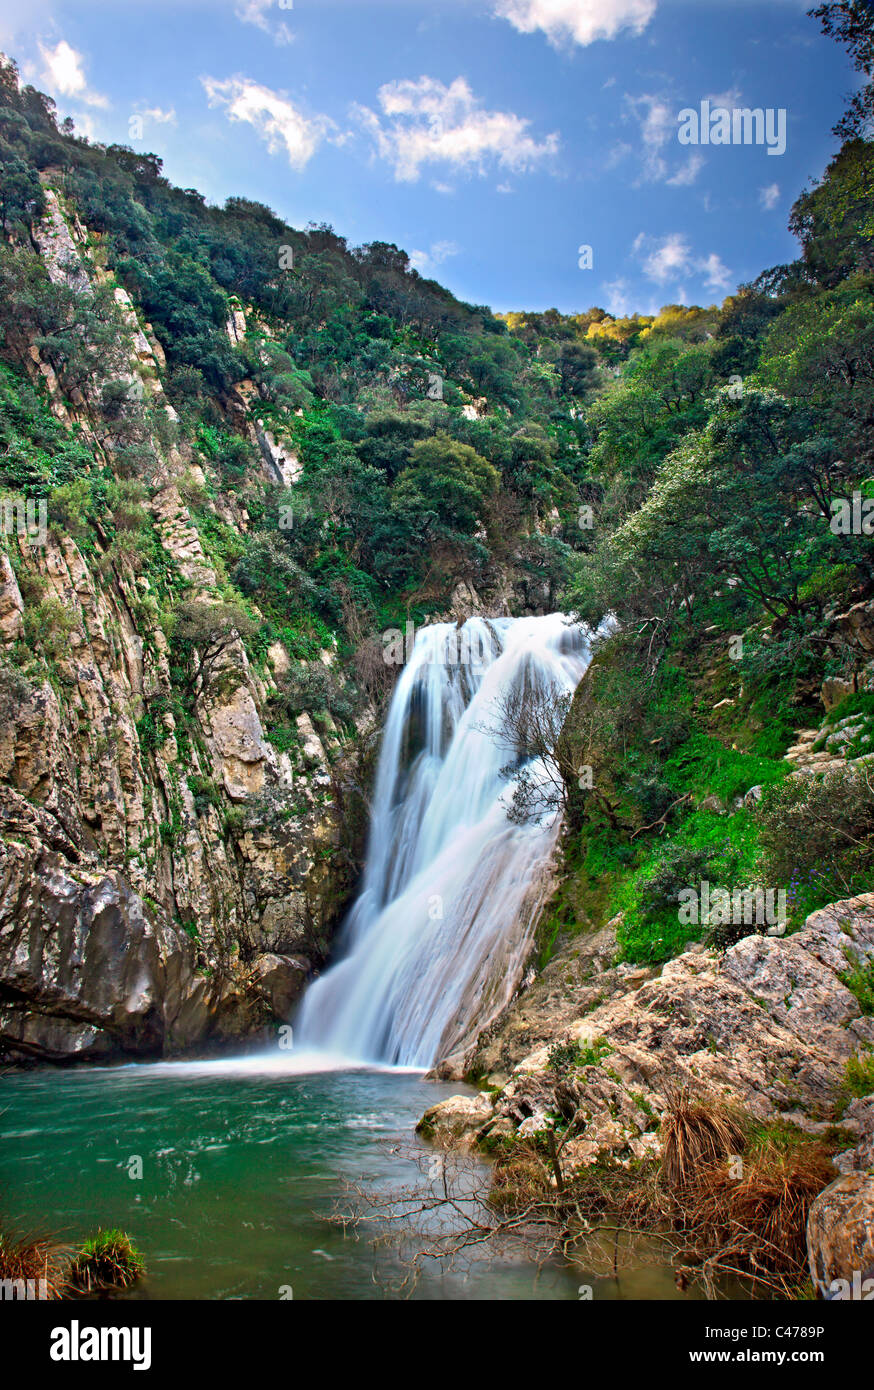 L'une des nombreuses chutes d'eau à Polylimnio, un lieu de beauté naturelle exceptionnelle à la préfecture de Messénie, Péloponnèse, Grèce Banque D'Images